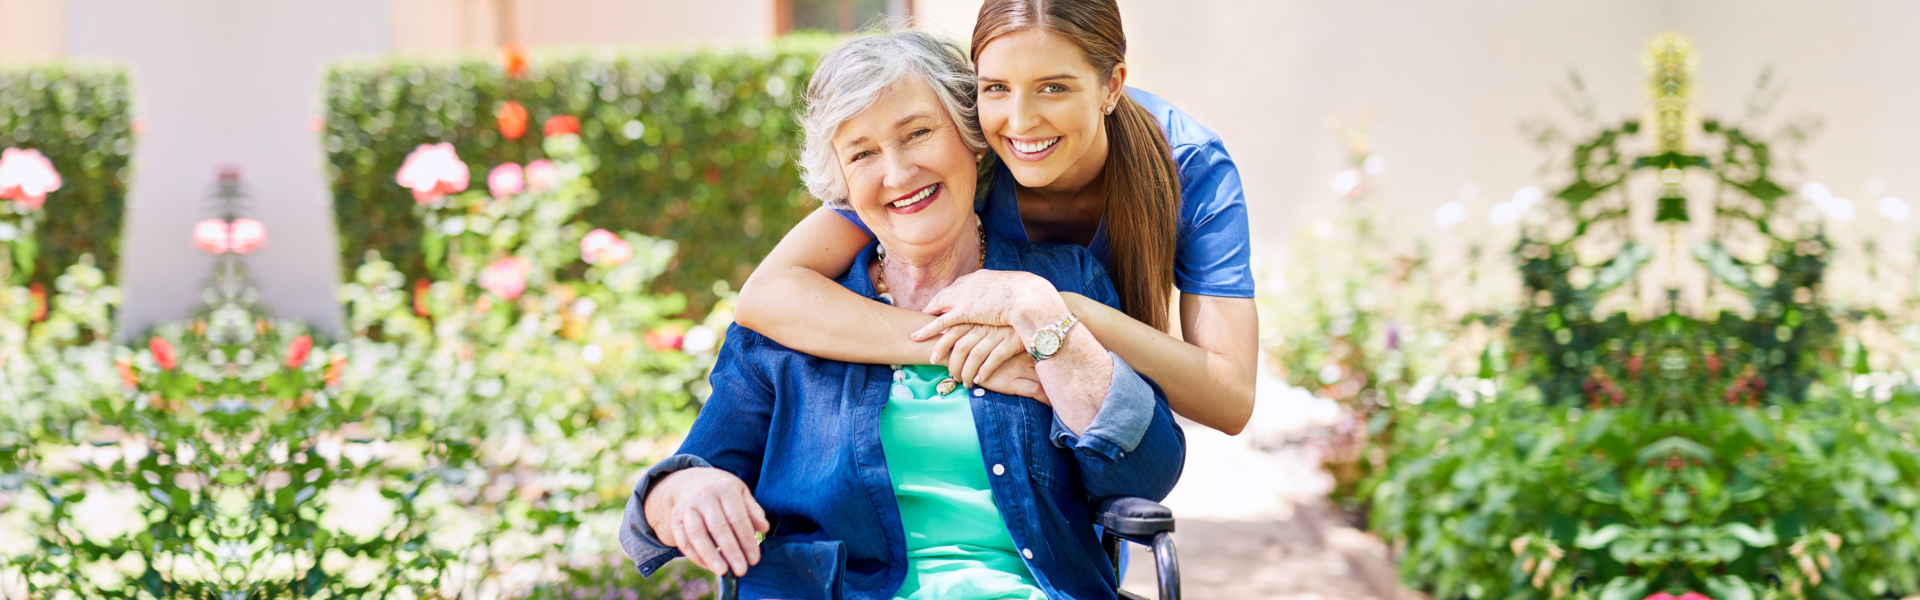 caregiver hugging the elderly